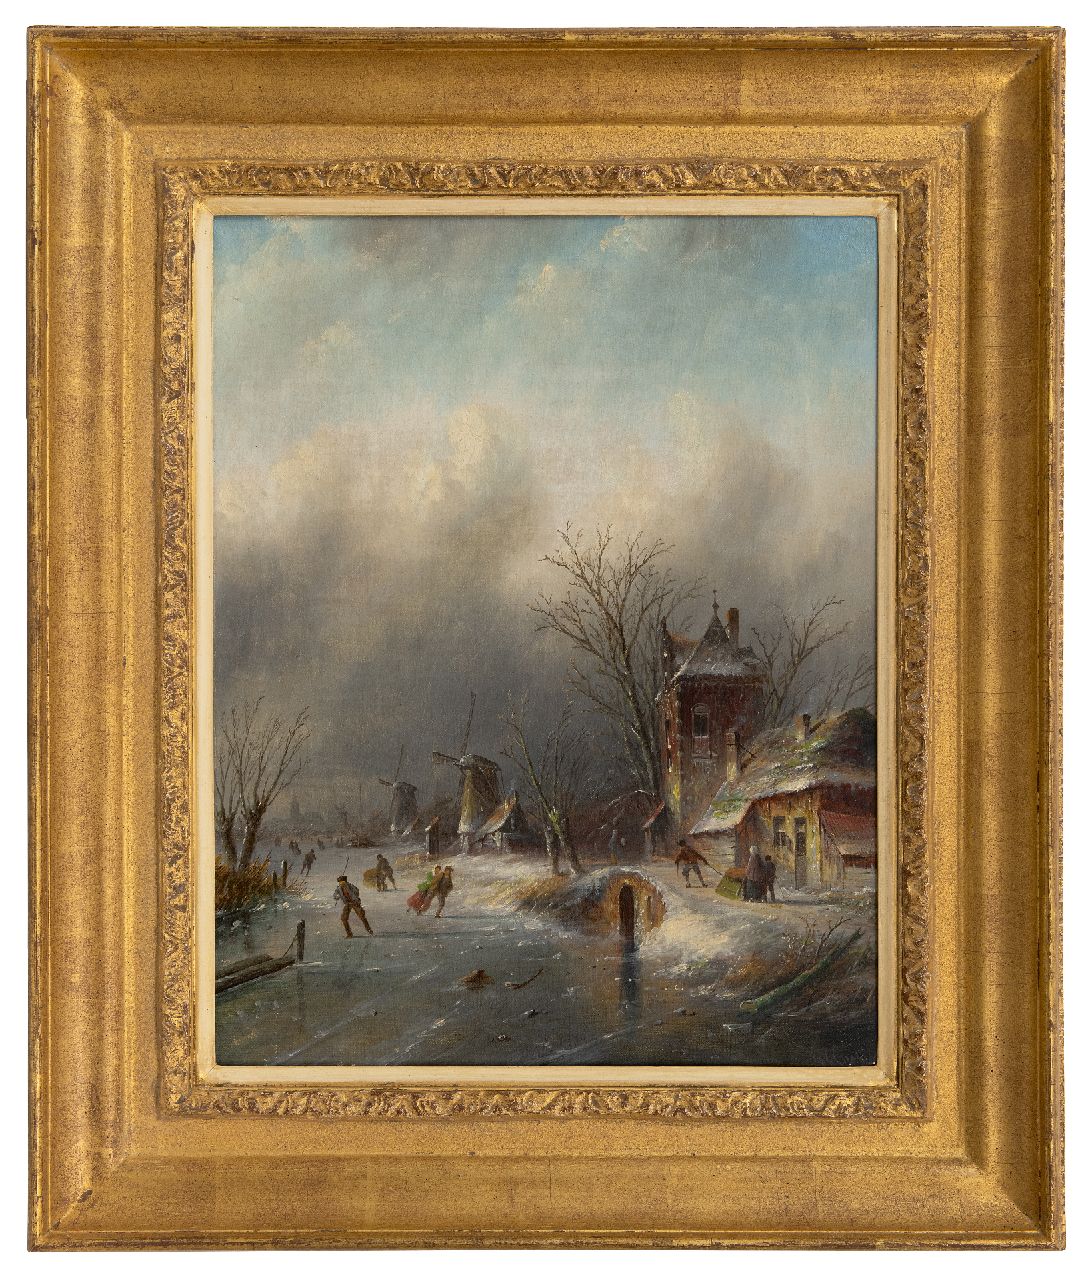 Spohler J.J.C.  | Jacob Jan Coenraad Spohler | Schilderijen te koop aangeboden | Schaatsers op het ijs bij opkomende sneeuwstorm, olieverf op doek 44,3 x 34,9 cm, gesigneerd rechtsonder